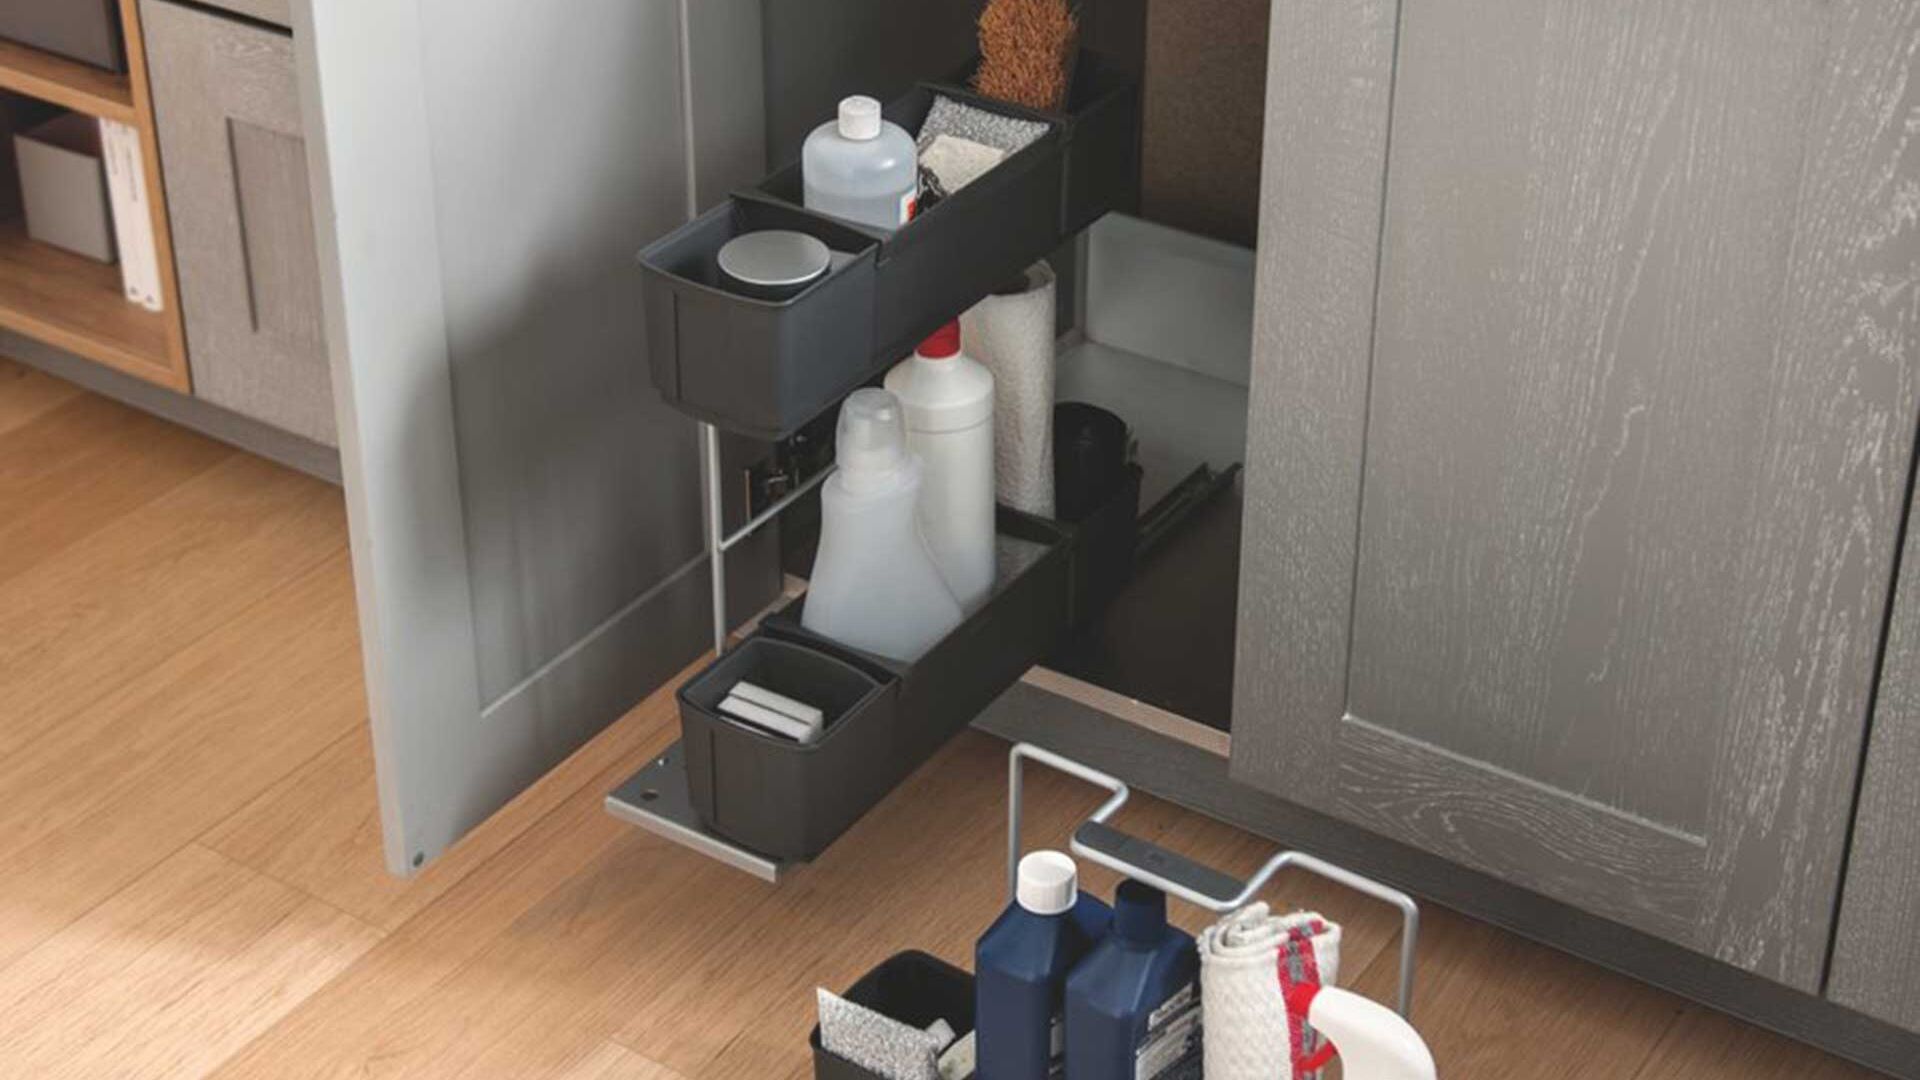 Schmidt - Distribuir los muebles de la cocina a lo largo de solo una pared  es una buena opción (o incluso la única) en espacios reducidos. Apuesta por  armarios altos con puertas